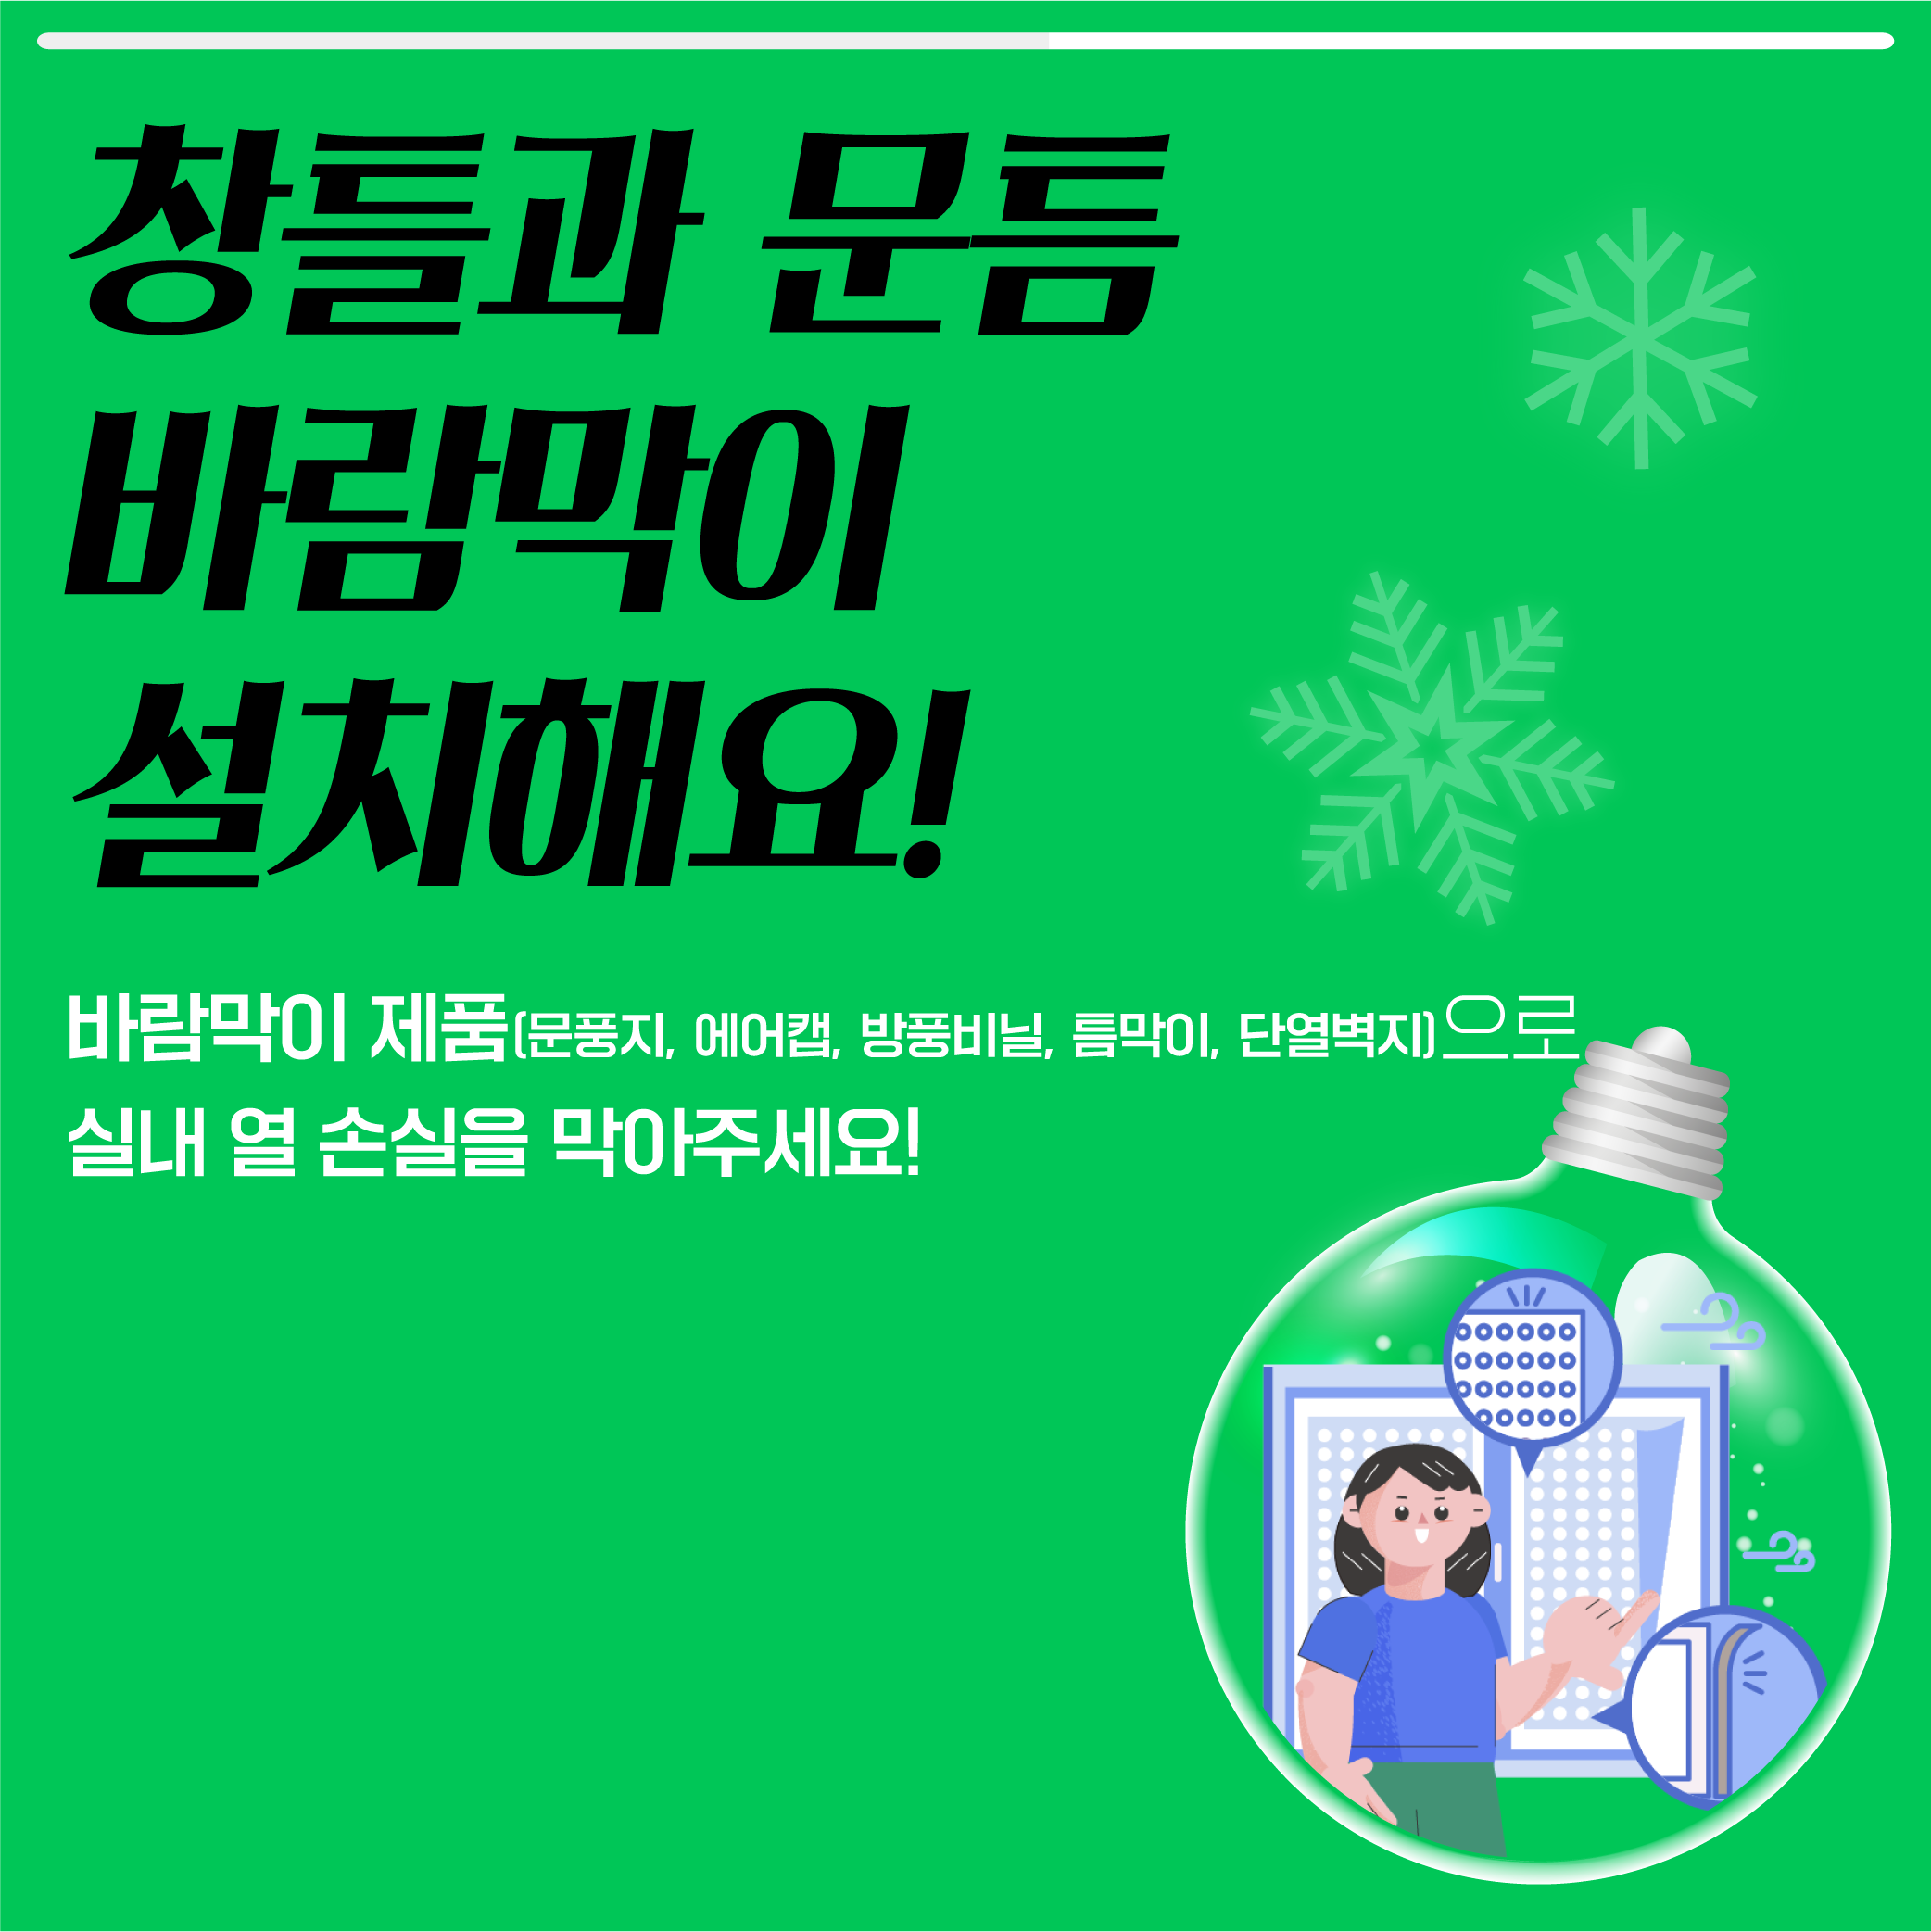 동절기 탄소중립 실천 카드뉴스_2.png